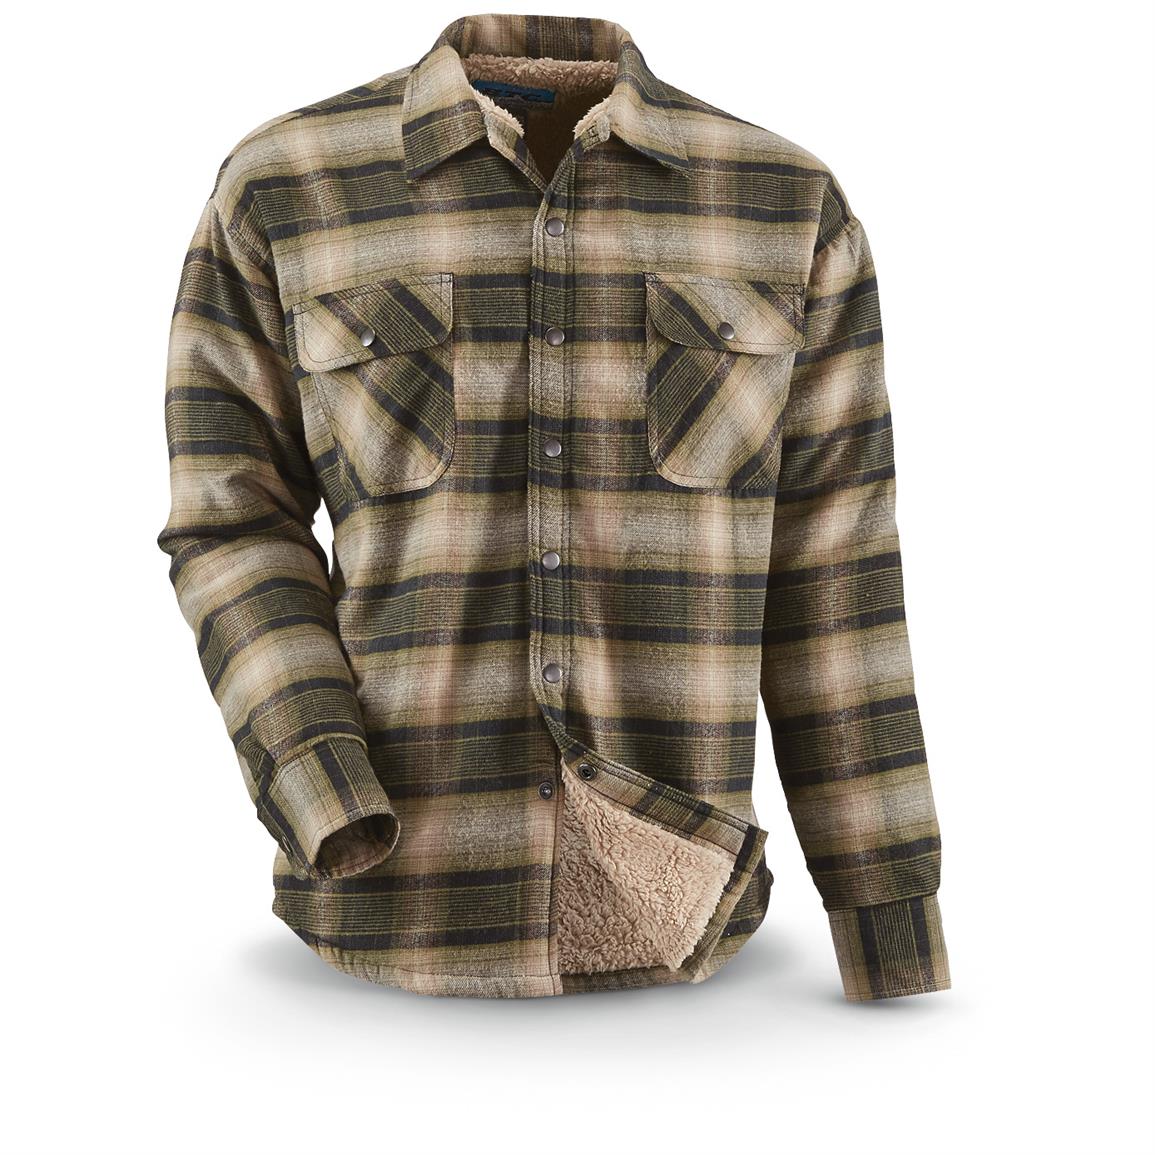 Plaid Snap Front Sherpa Lined Shirt/Jacket - 665230, Shirts at